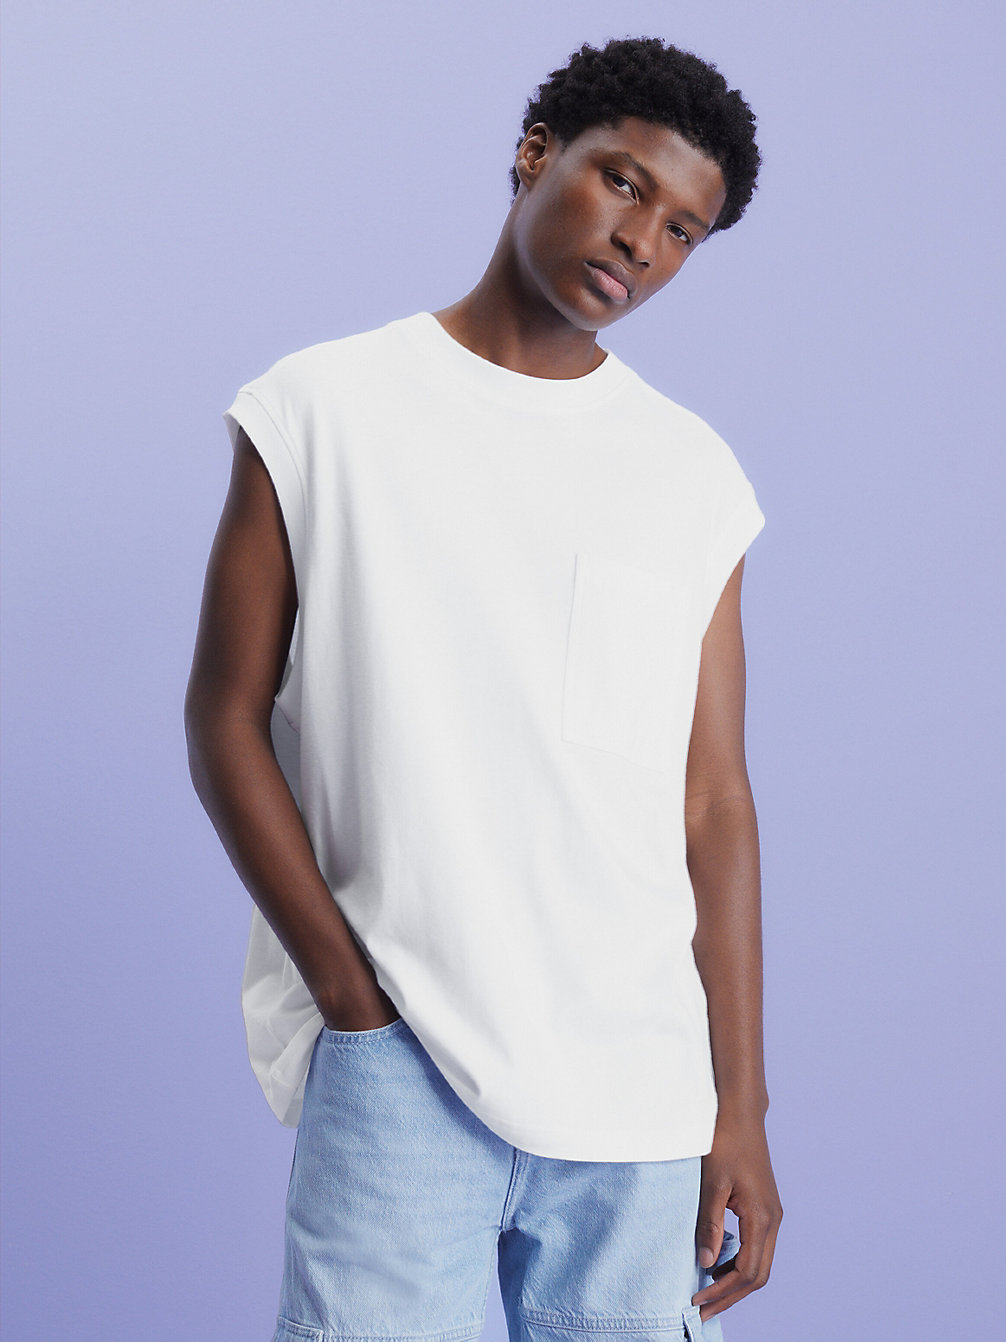 BRIGHT WHITE > Swobodny Top Bez Rękawów Z Logo Na Plecach > undefined Mężczyźni - Calvin Klein